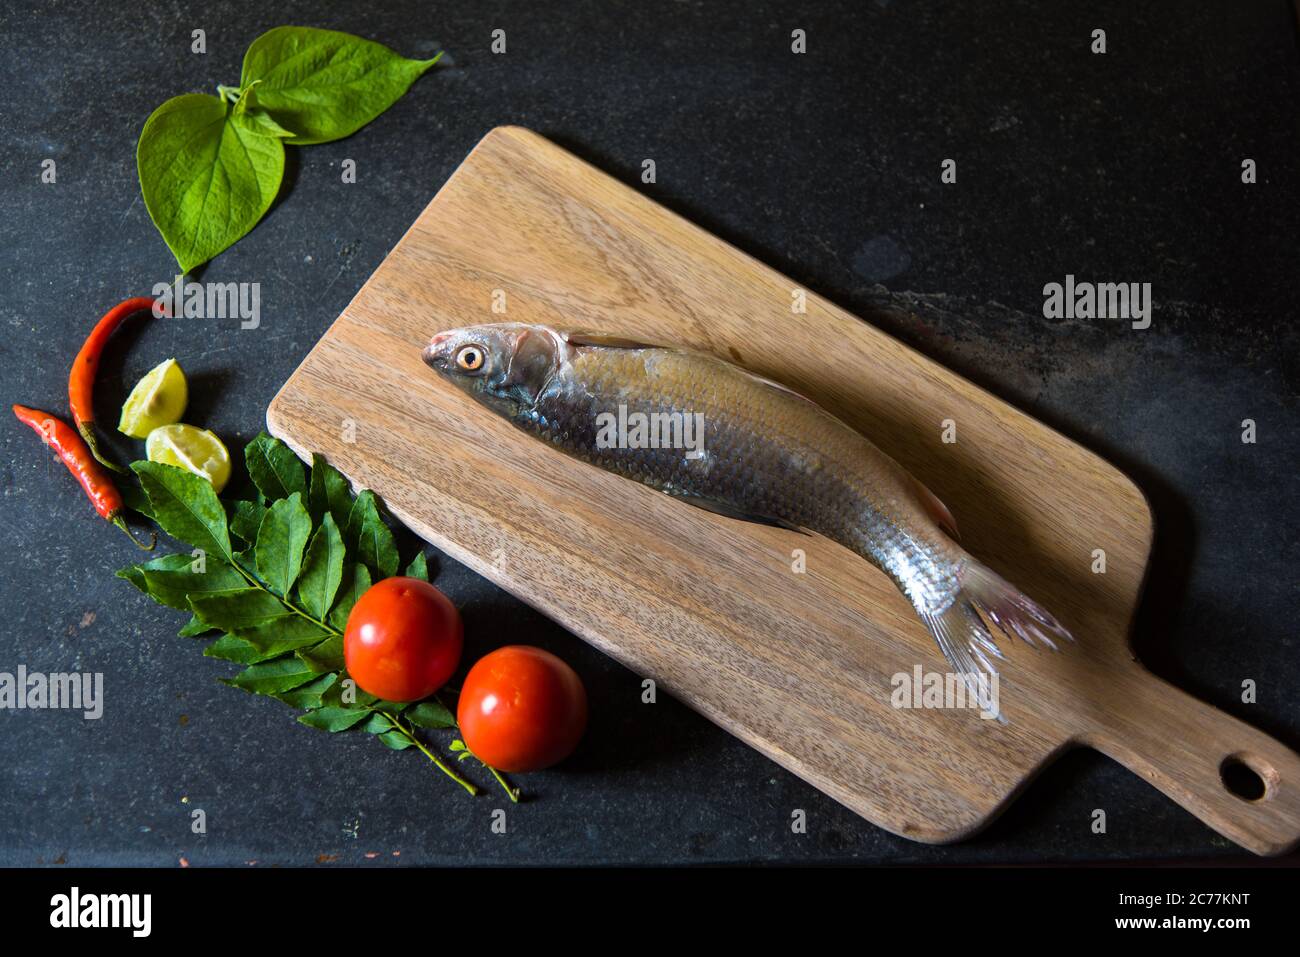 Poisson cru sur un fond avec utilisation de l'accent sélectif sur une partie particulière du poisson et le reste du poisson et d'autres ingrédients flous. Banque D'Images